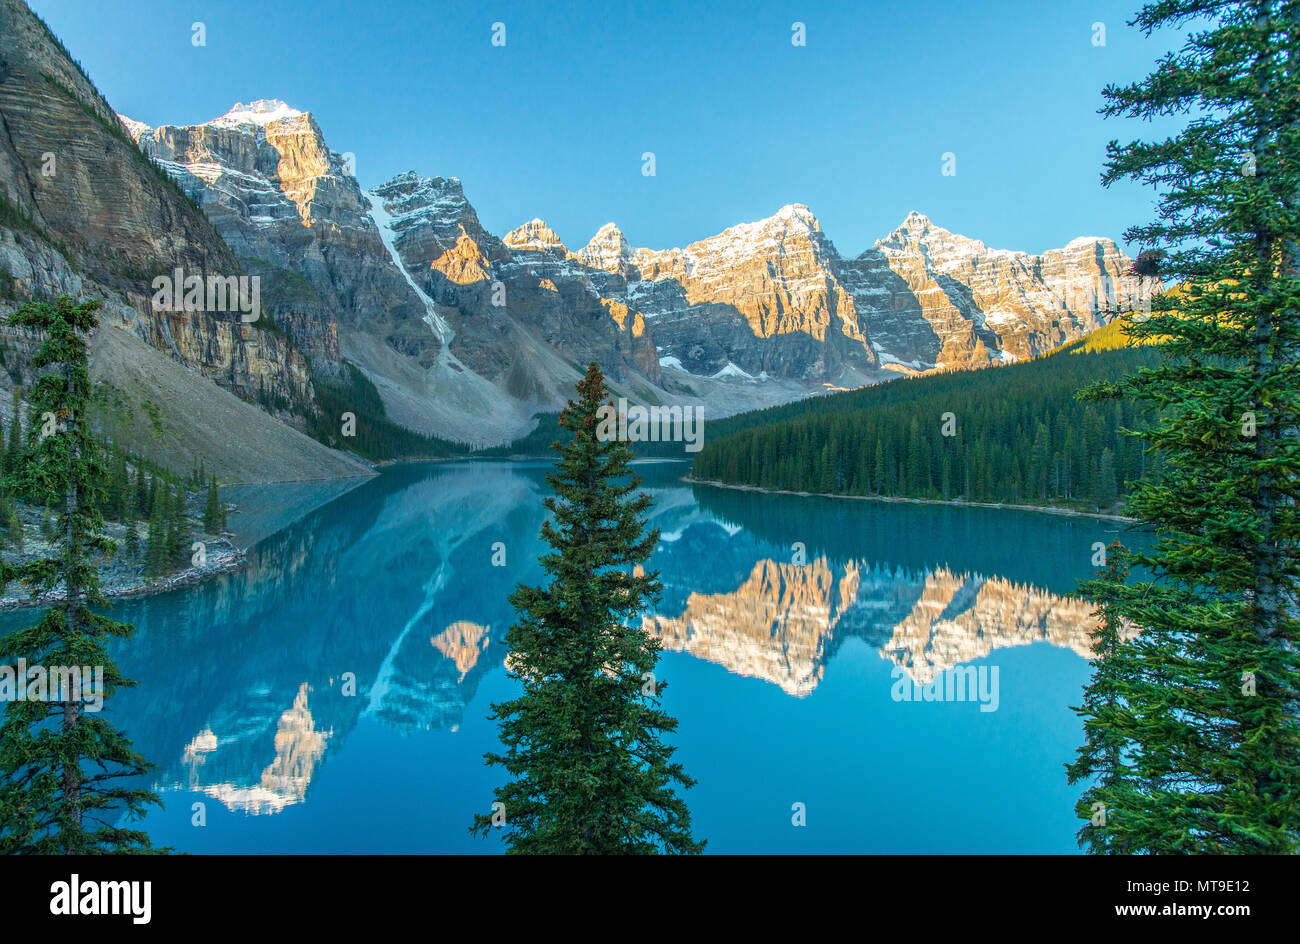 Parfaitement immobile reflet de la dix pics sur les eaux du lac Moraine, lieu emblématique des Rocheuses canadiennes. Le lever du soleil, montagne, ciel Banque D'Images